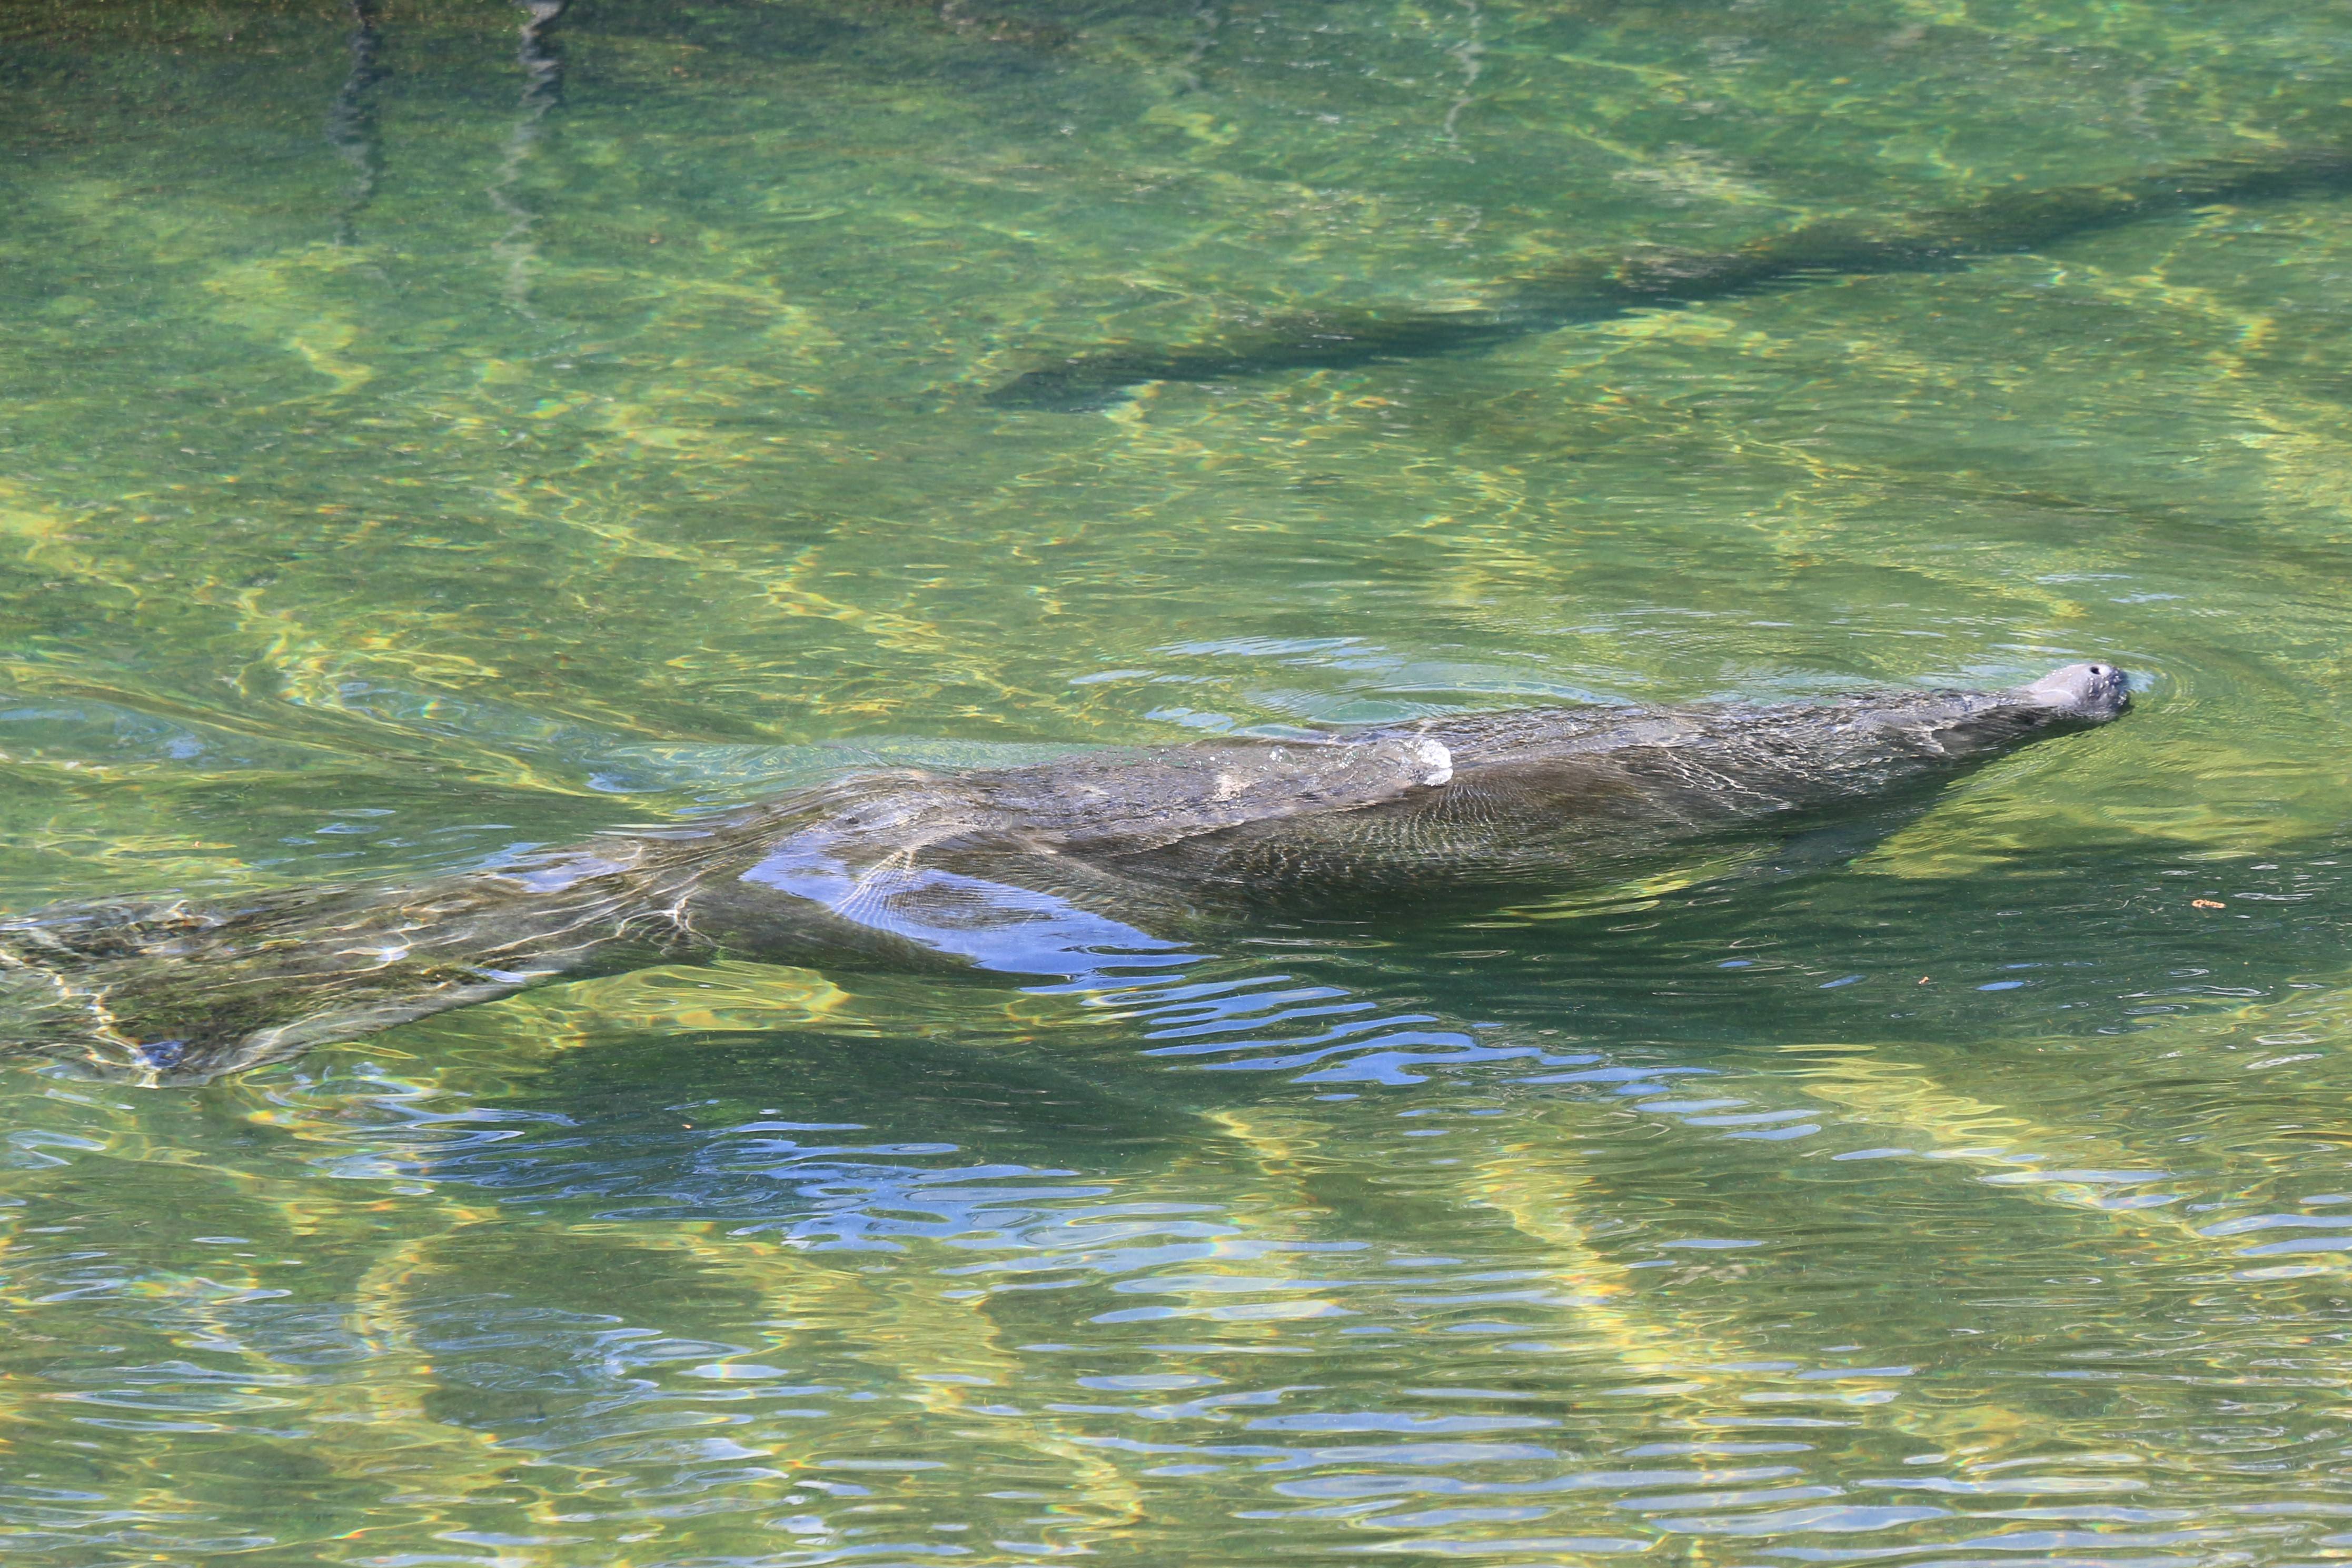 Swimming manatee